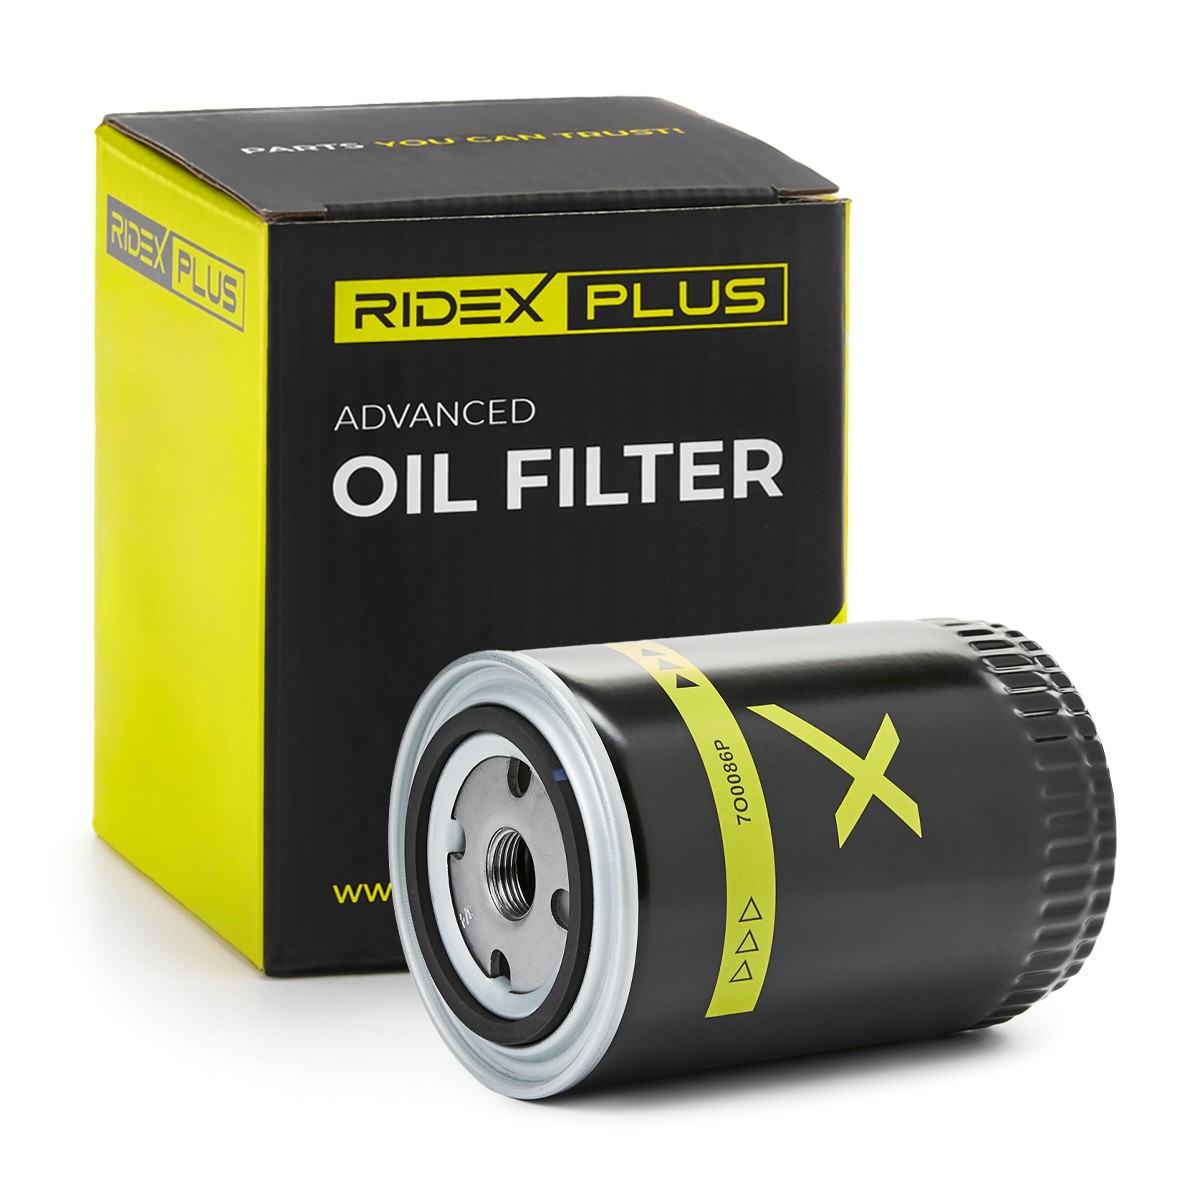 RIDEX PLUS 7O0086P Oil filter 2951 957